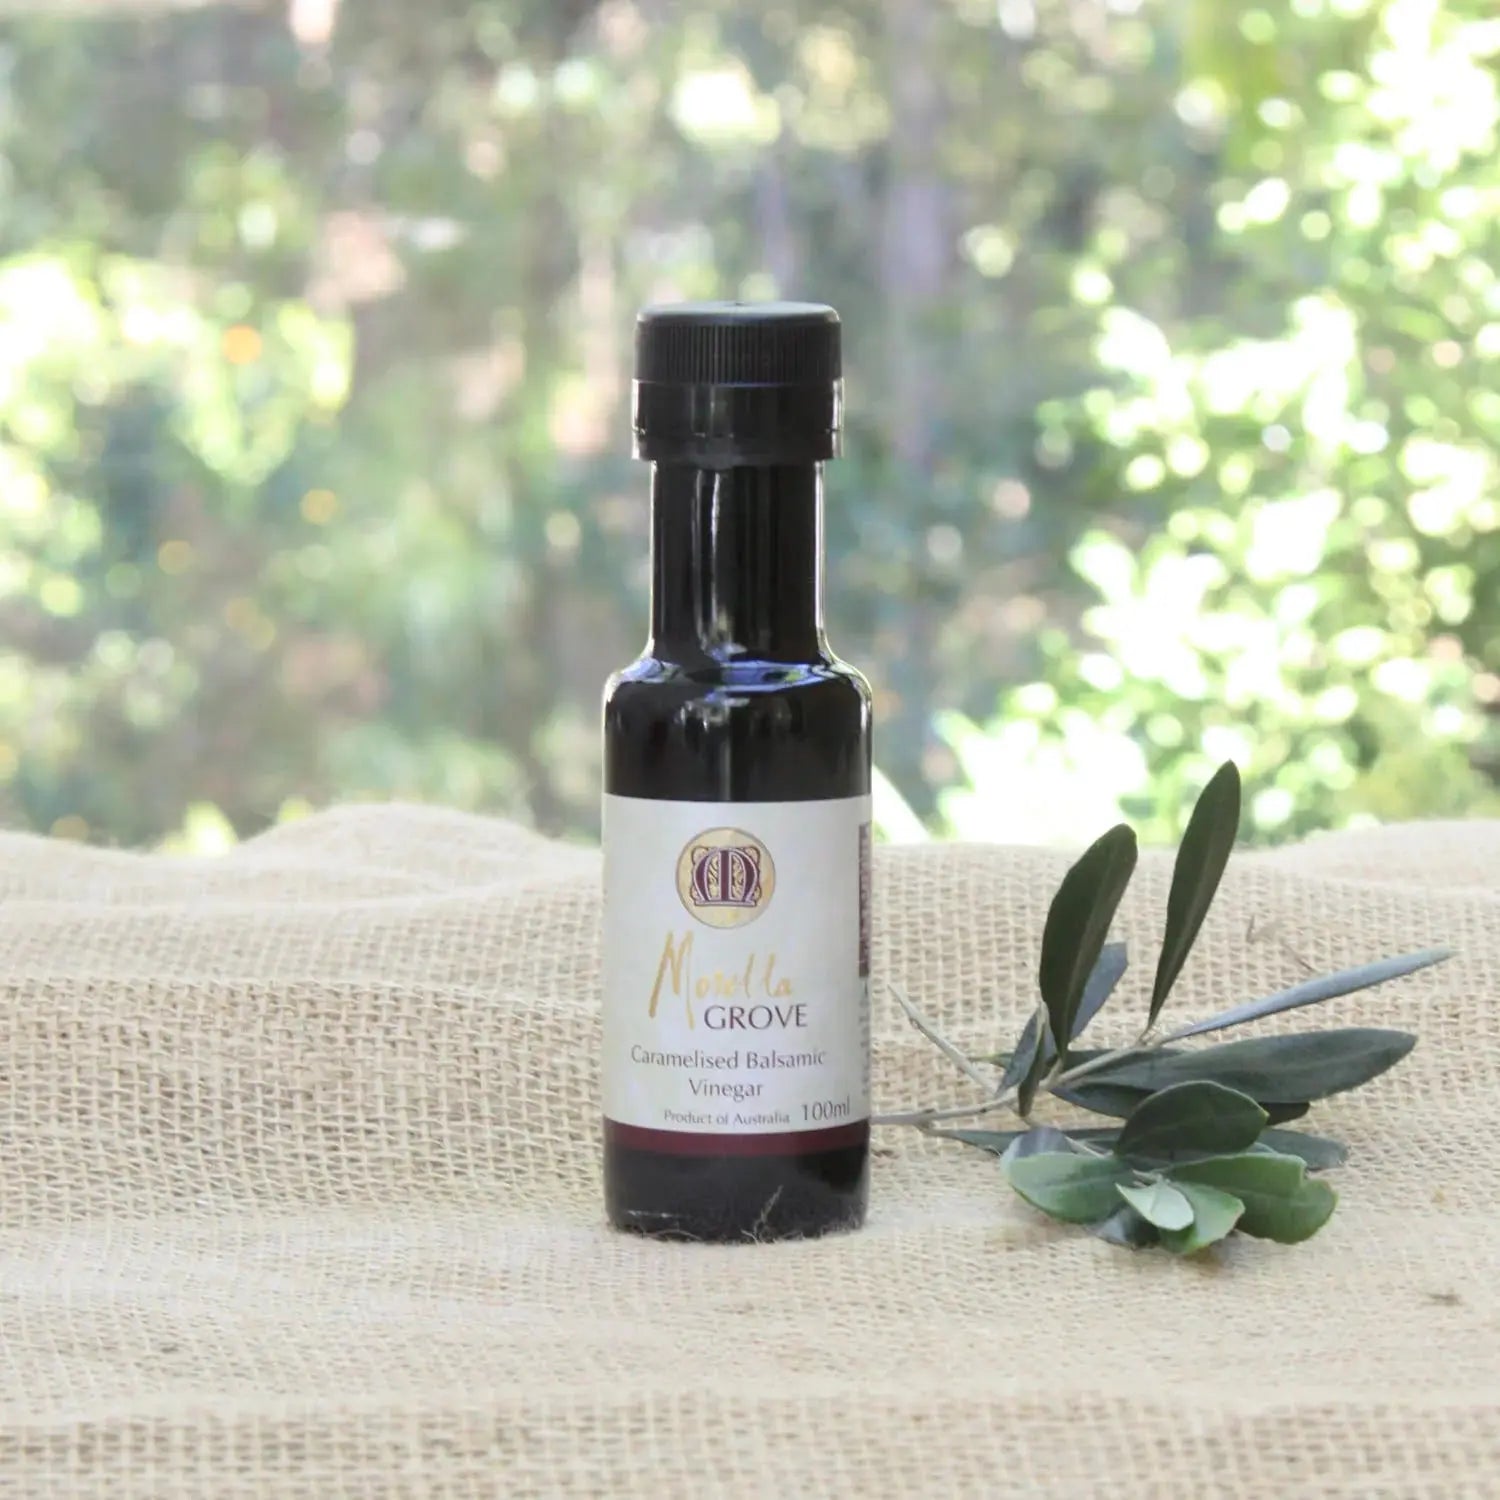 Morella Grove Caramelised Balsamic Vinegar - petitstresors